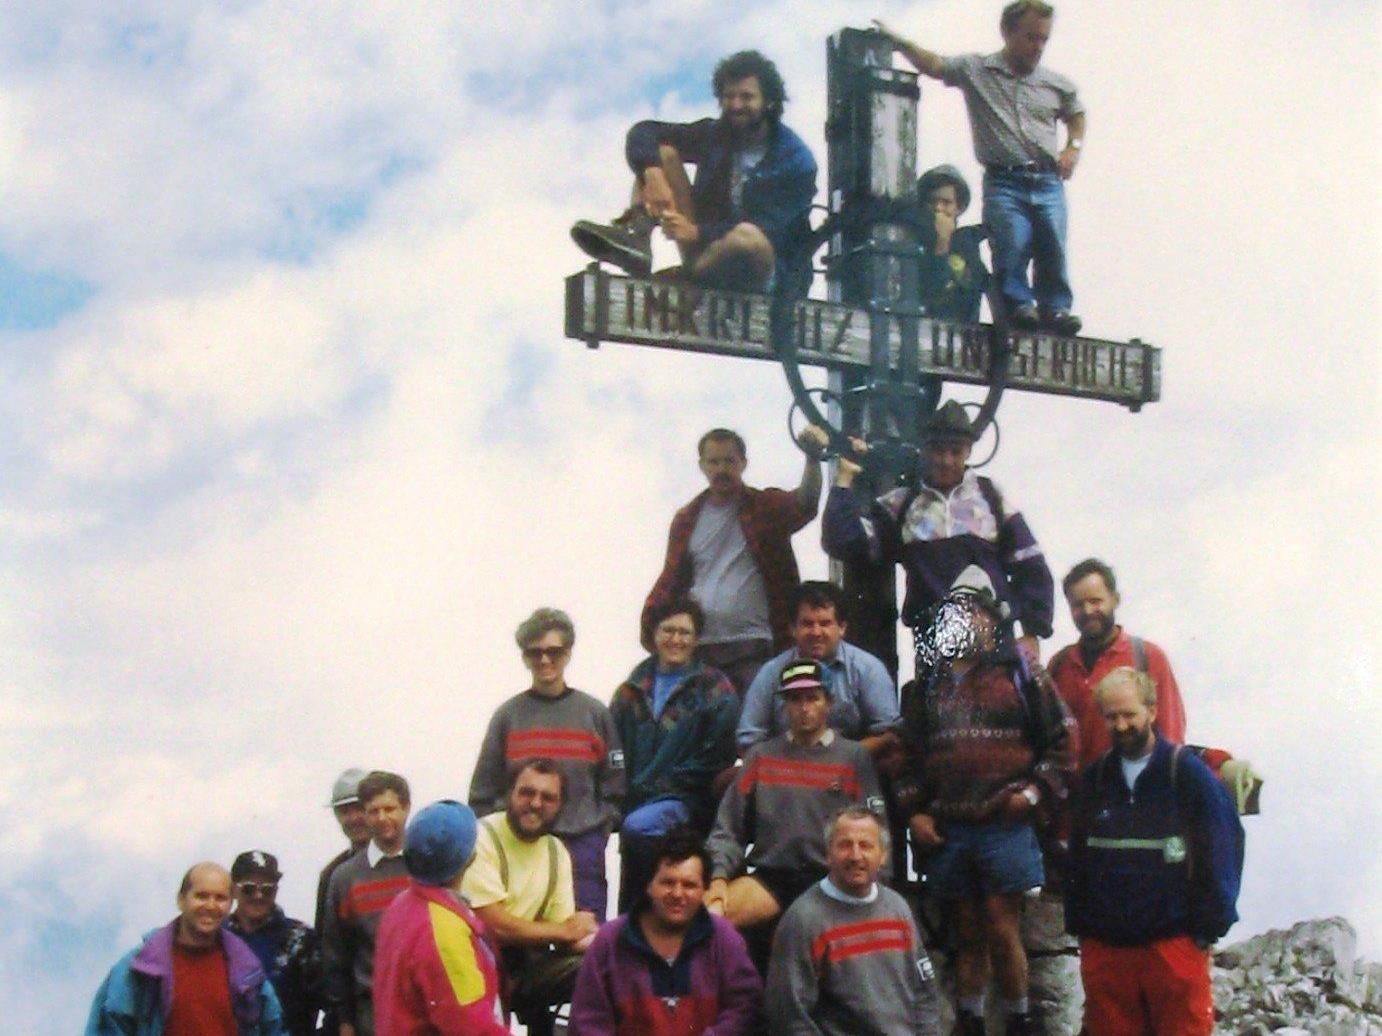 30 Jahre Gipfelkreuz Fundelkopf, 1994.